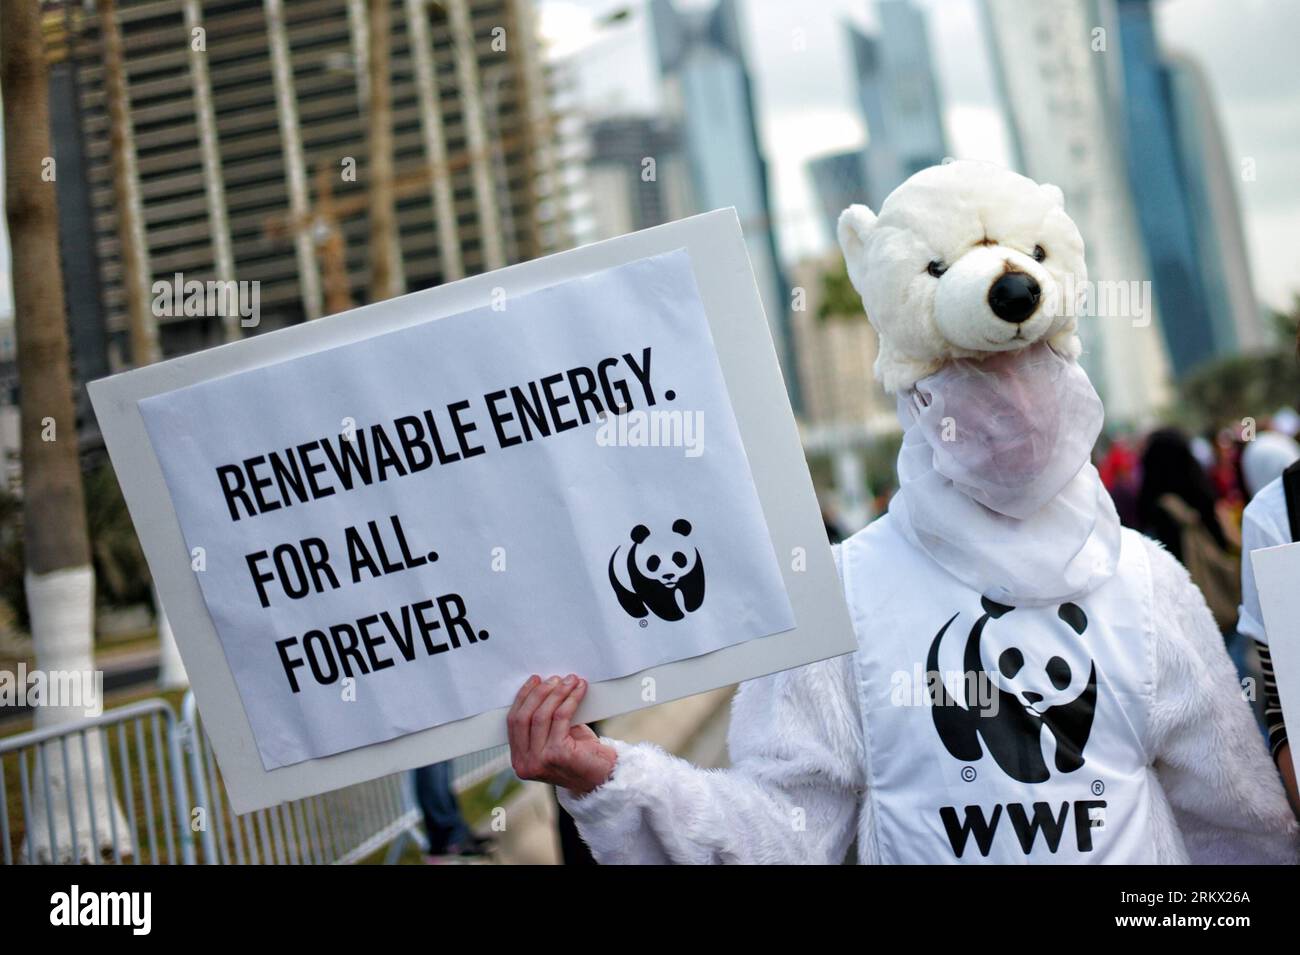 121201 -- DOHA, 1. Dezember 2012 Xinhua -- Ein Mann aus dem WWF in Eisbärenkostüm nimmt am 1. Dezember 2012 an einem marsch in Doha, Katar, Teil. Hunderte von Umweltschützern aus der ganzen Welt sind am Samstag in Doha aufgezogen und haben ihre Regierungen aufgefordert, weitere Maßnahmen bei den Klimaverhandlungen hier zu ergreifen, um der Erwärmung der Welt Einhalt zu Gebieten. Der marsch, der zum ersten Mal in der arabischen Region stattfindet, wird von einer Reihe regionaler grüner NRO unterstützt, darunter die Doha-Oase, sowie von einigen großen internationalen grünen Netzwerken wie dem Climate Action Network und TckTck. Xinhua/Li Muzizyw QATAR-DOHA-COP18-CMP8-MARCH PUB Stockfoto